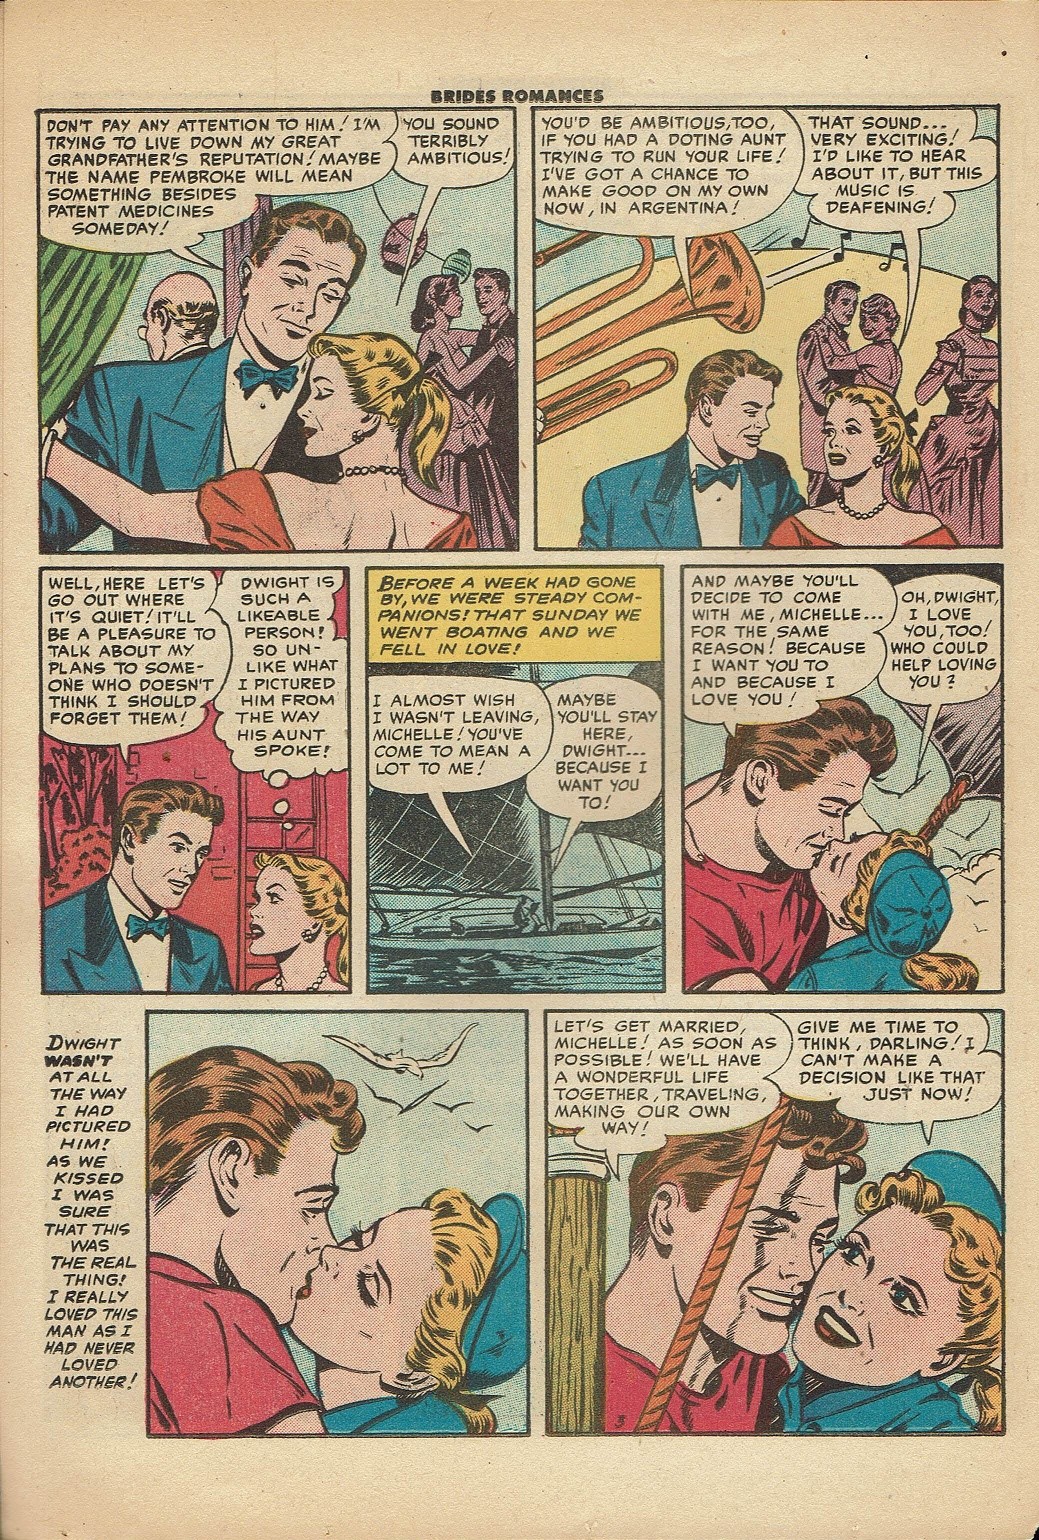 Read online Brides Romances comic -  Issue #17 - 14